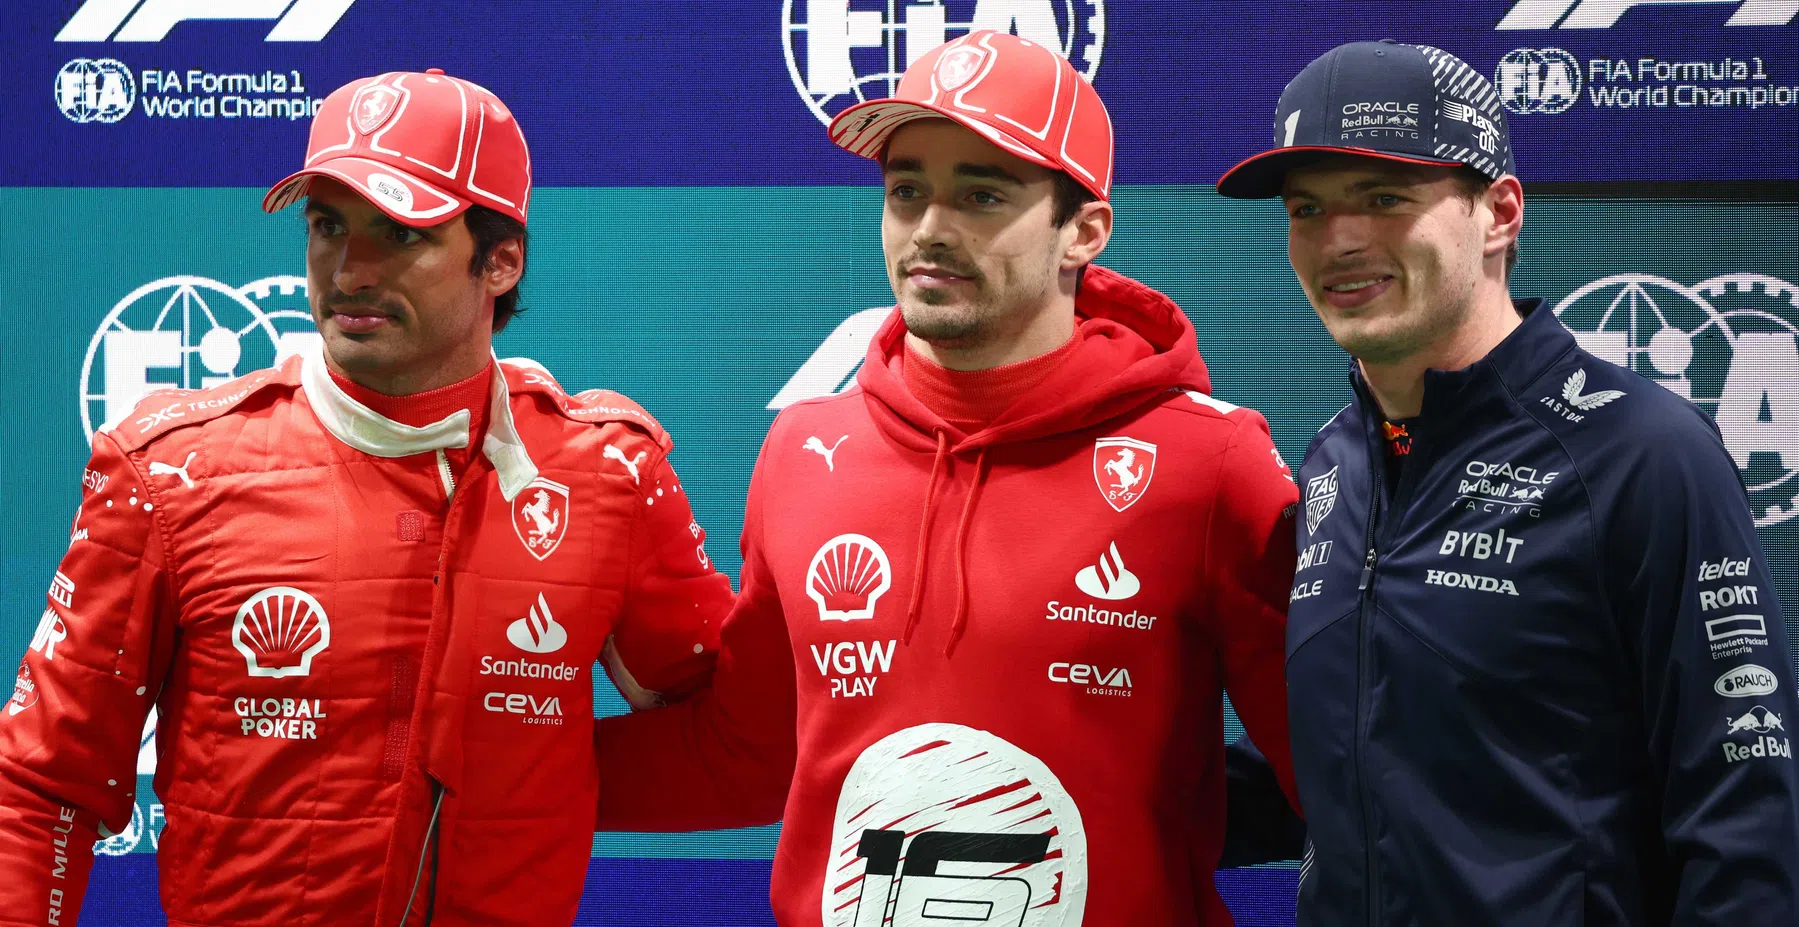 Le départ définitif | Leclerc et Verstappen en tête, Sainz pénalisé.